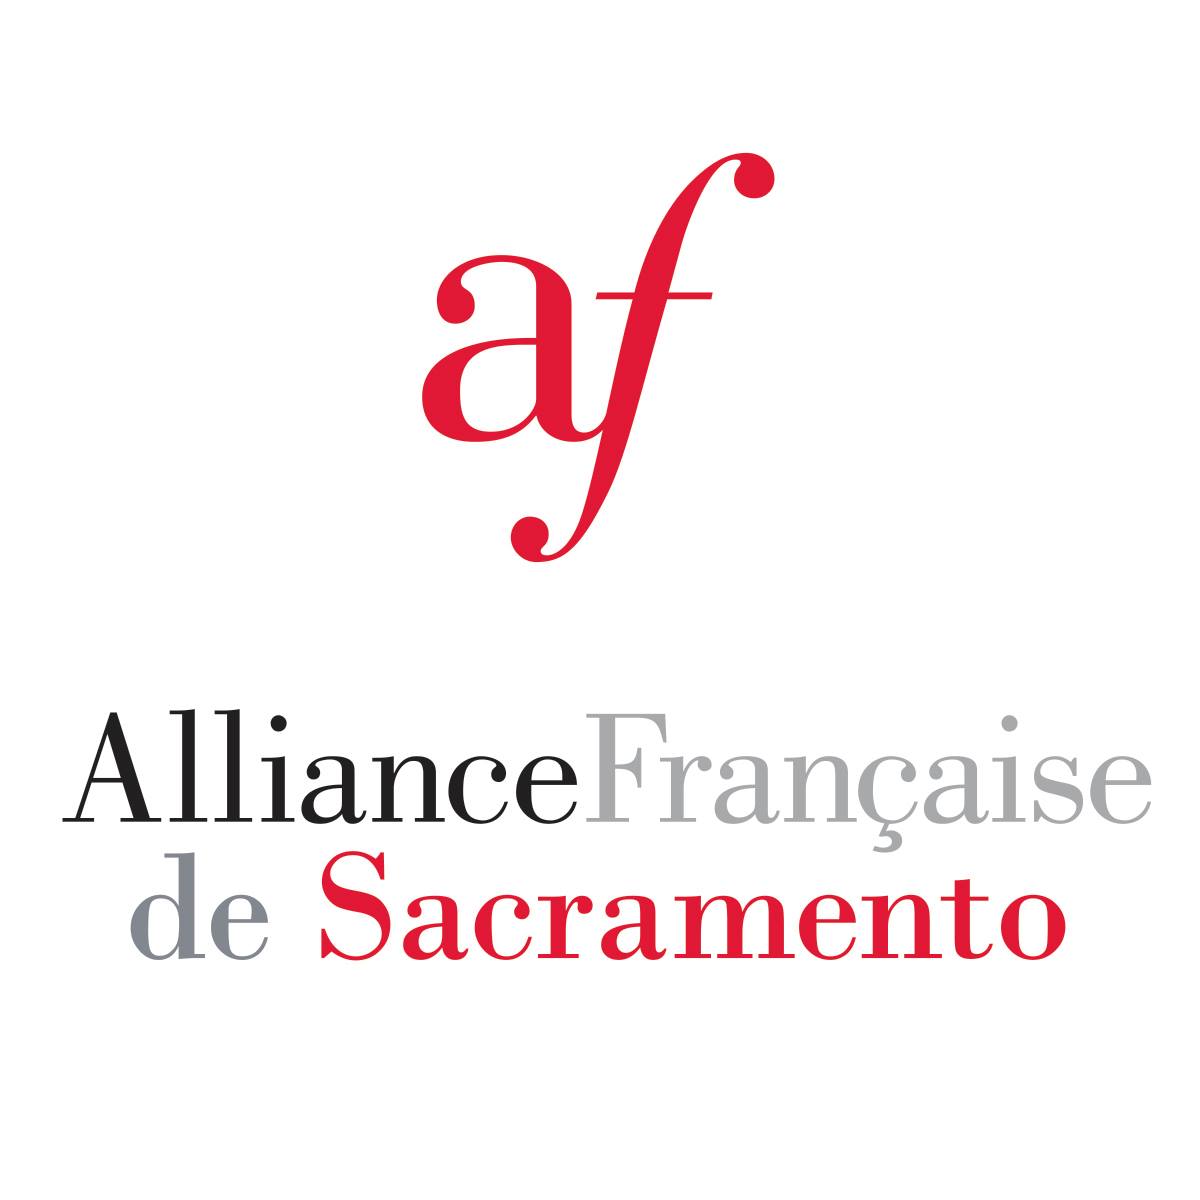 French Organization in California - Alliance Francaise de Sacramento